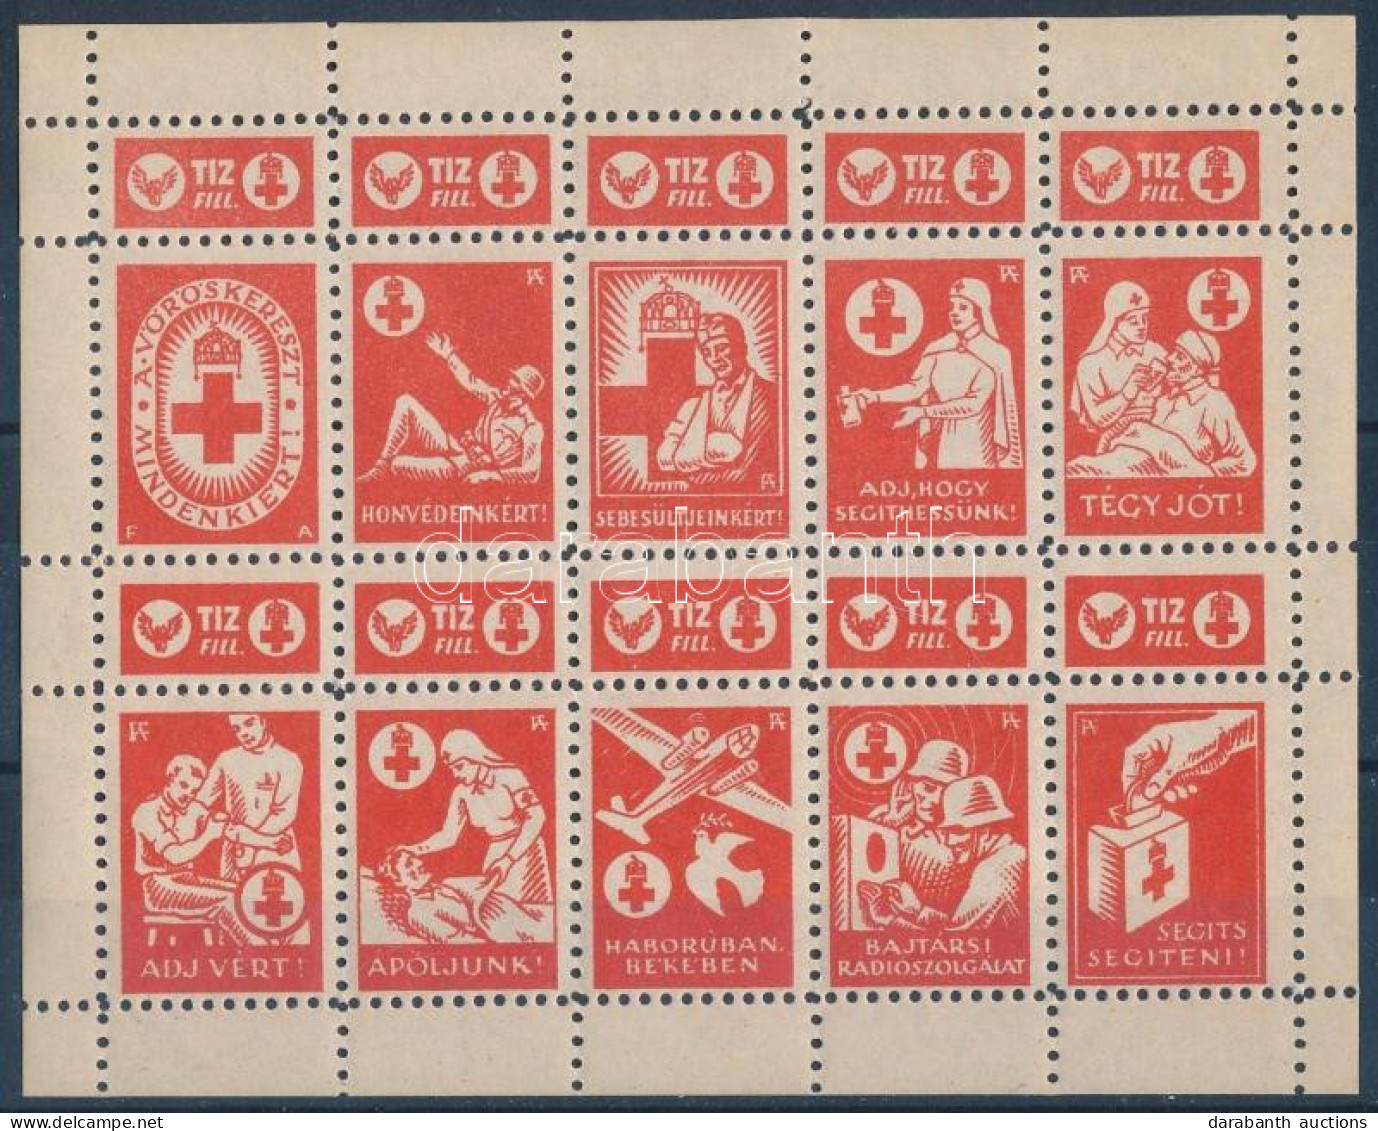 ~1942 Vöröskereszt 10f Adománybélyeg 10-es Kisívben / Hungarian Charity Stamp In Mini Sheet Of 10 - Ohne Zuordnung